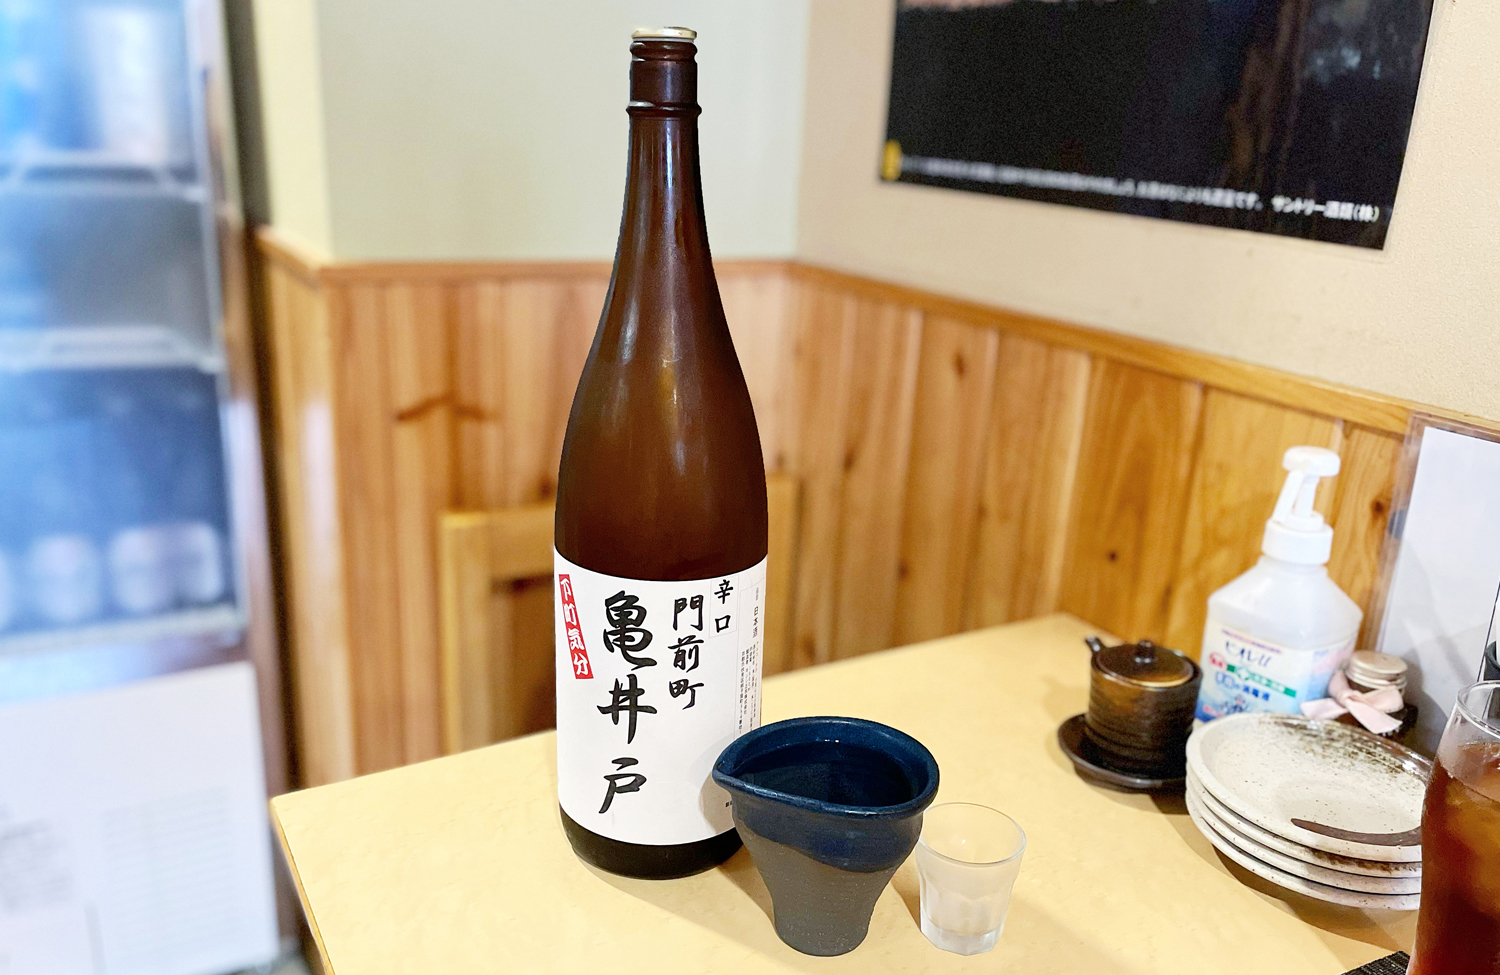 亀戸のとある酒屋でのみ購入できる日本酒。